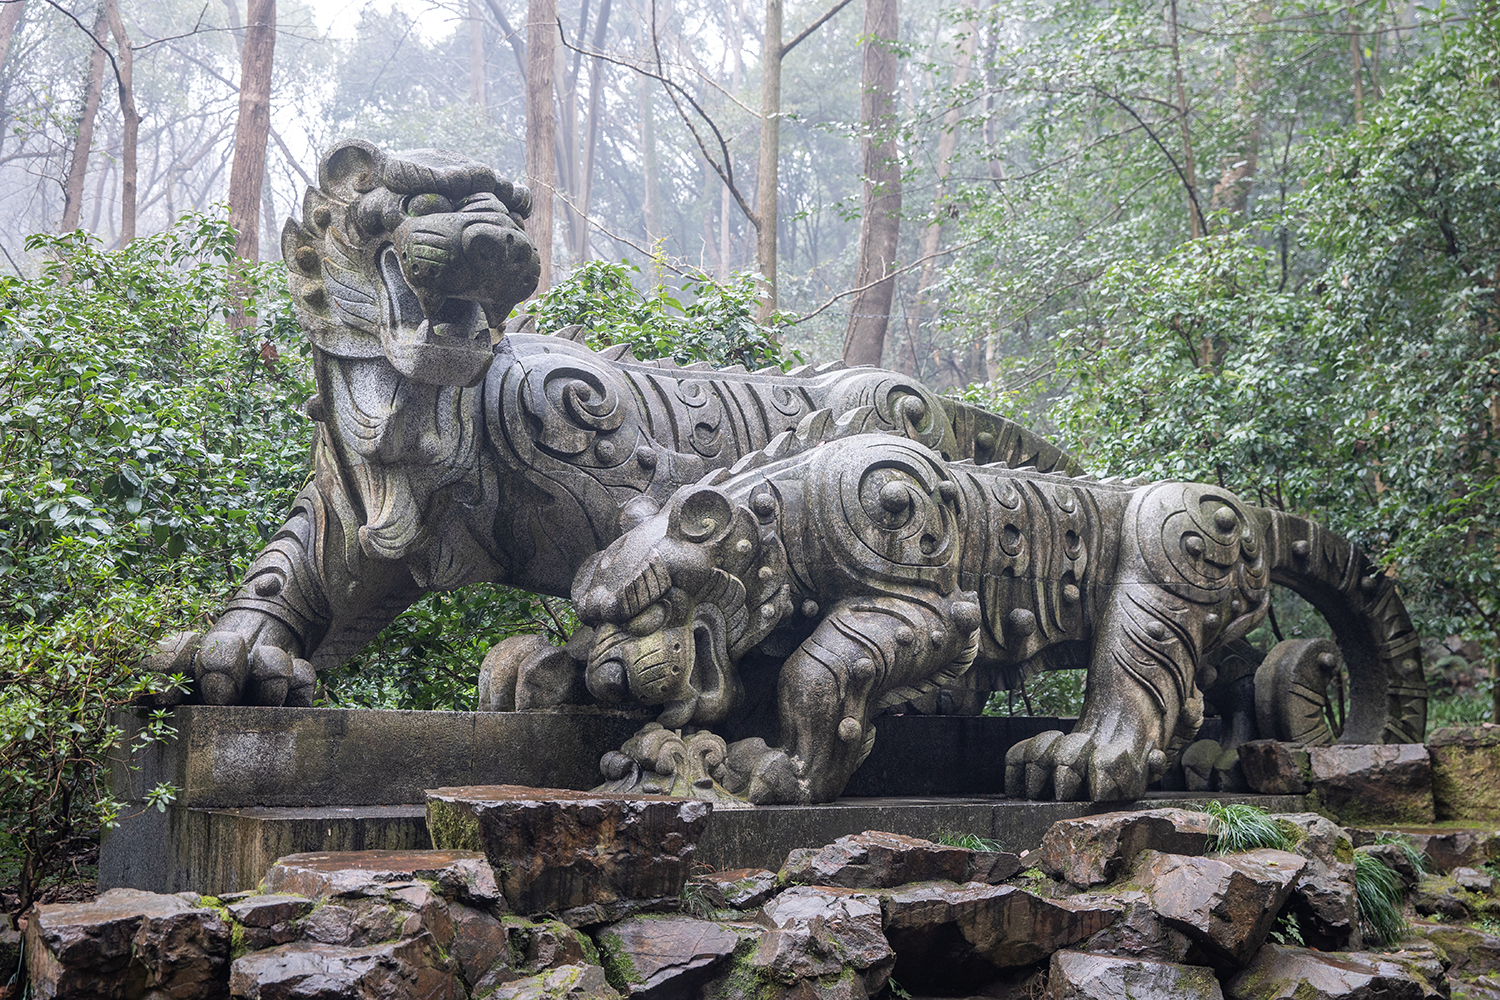 220201czq28 虎跑公园,艺术家韩美林创作的雕塑《虎跑》